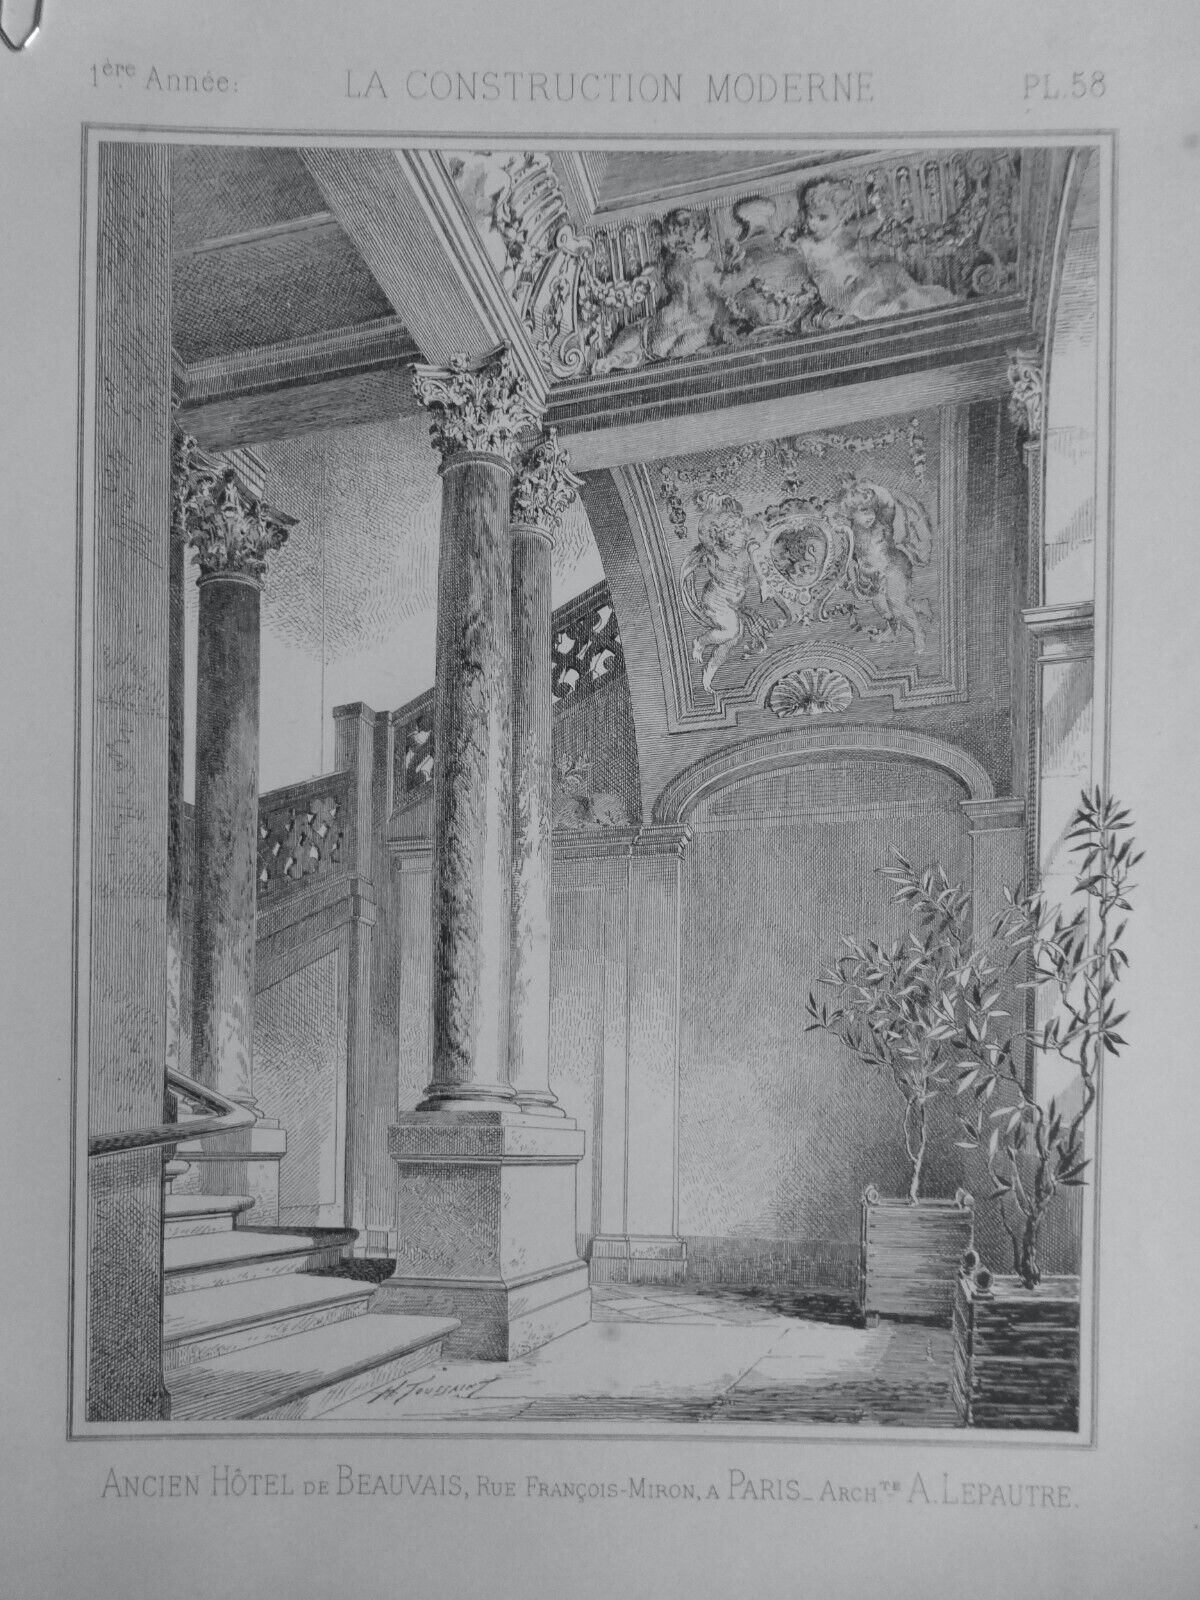 1886 Architecture Antique Hotel Beauvais Paris Architect A.Lepautre